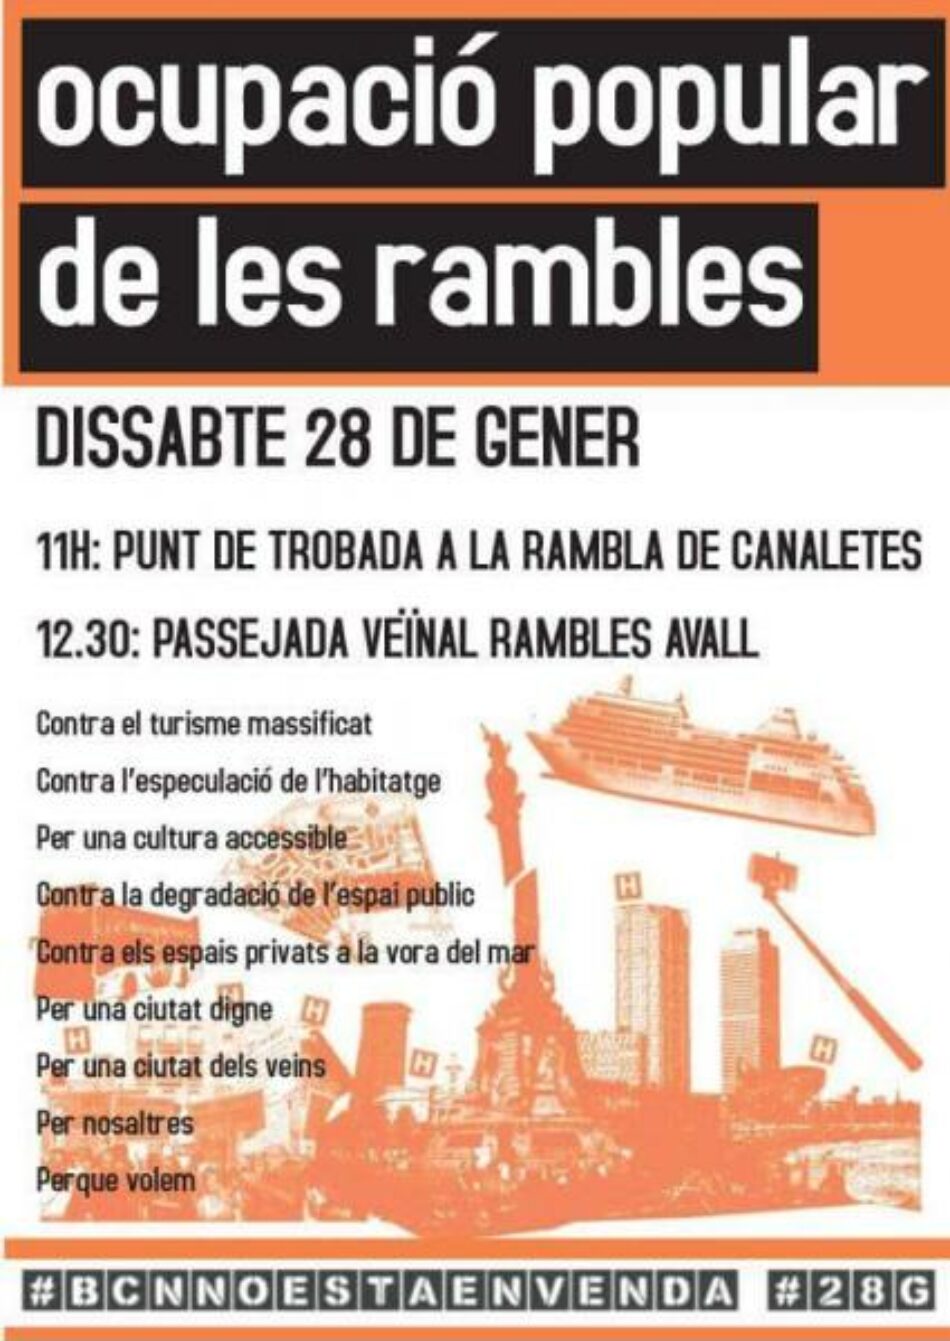 CGT de Barcelona juntament amb mig centenar d’organitzacions socials  ocuparan les Rambles el dissabte